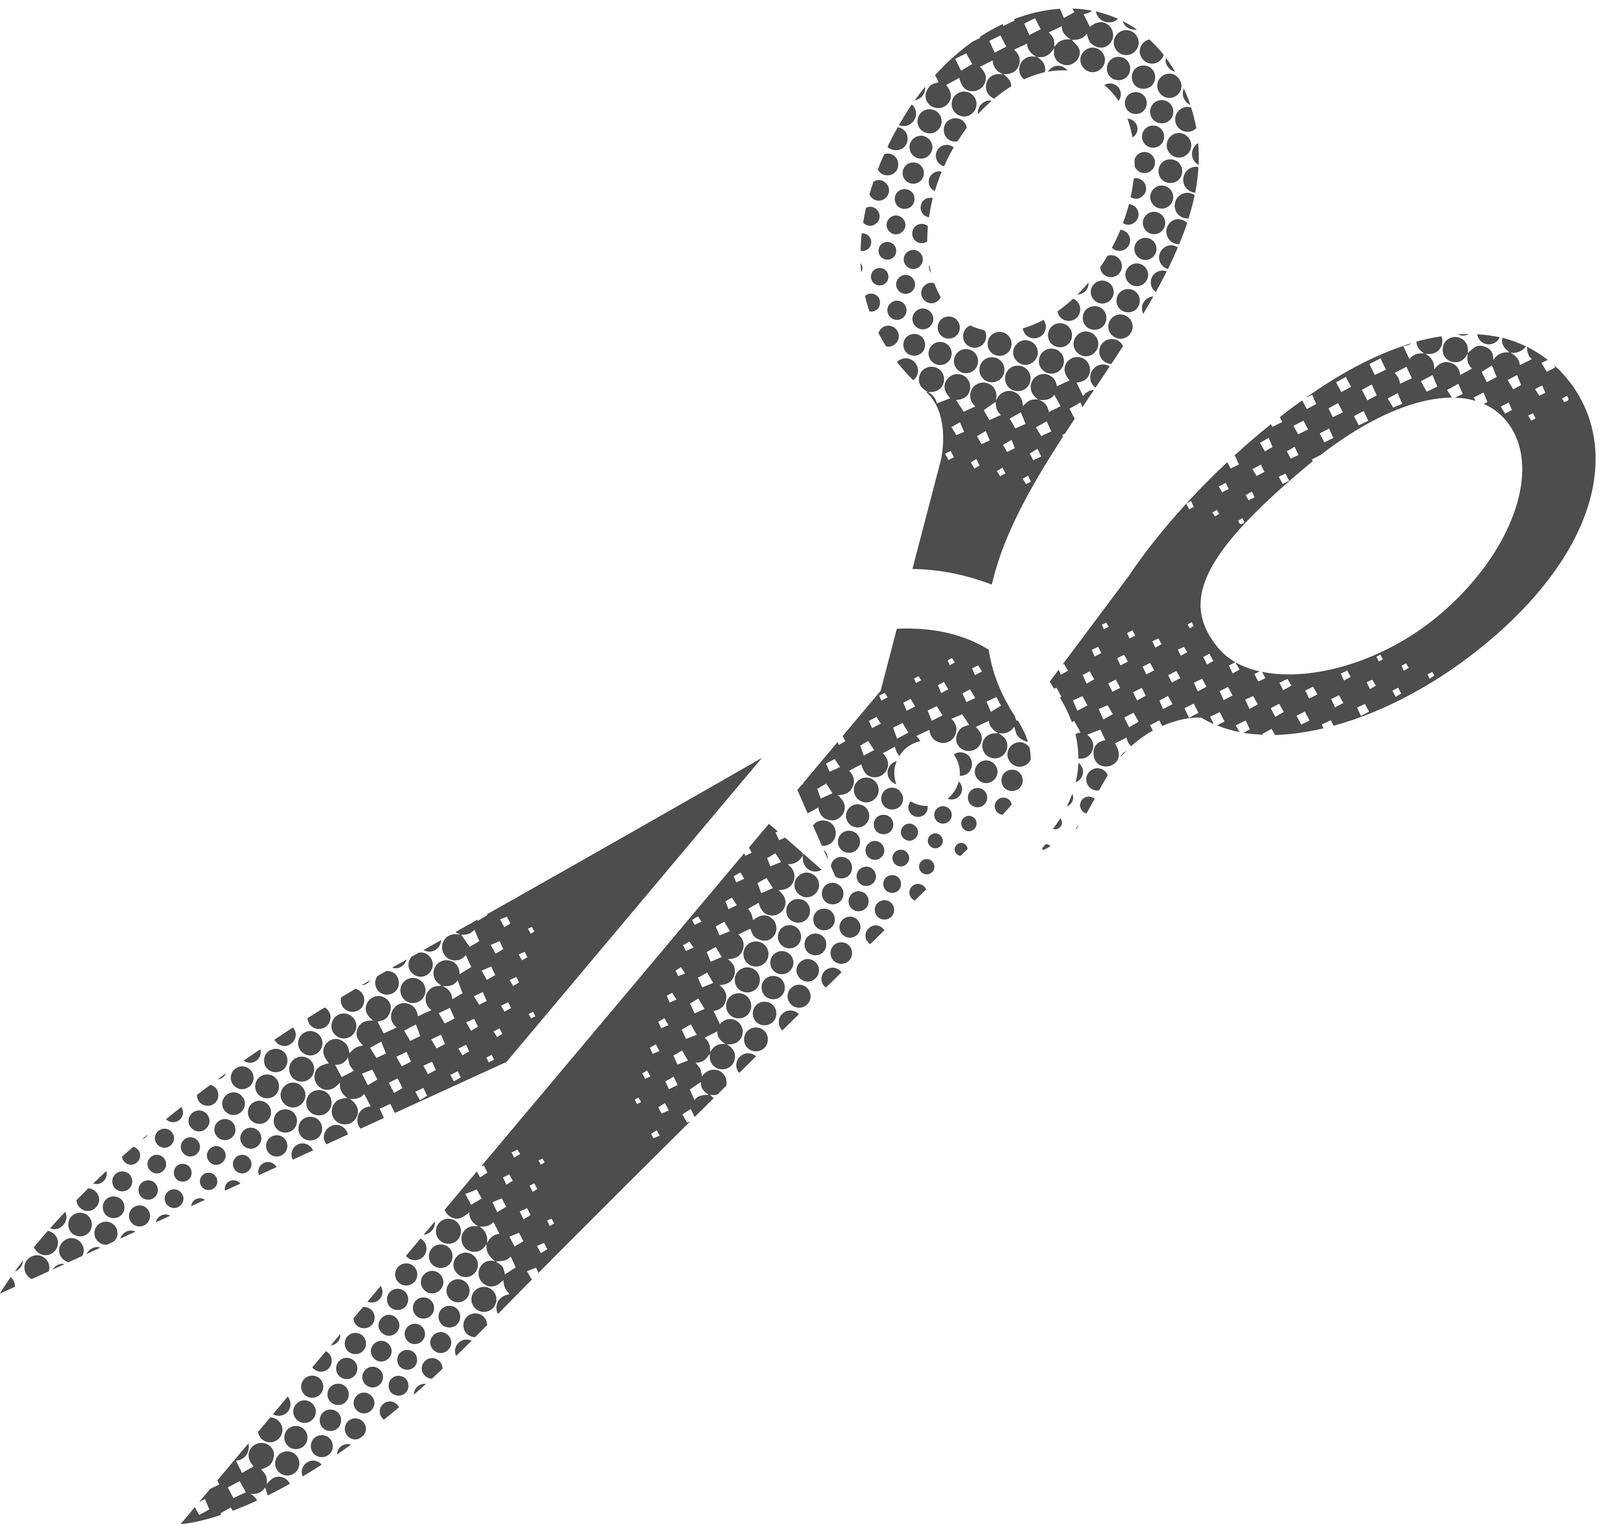 Halftone Icon - Scissor by puruan